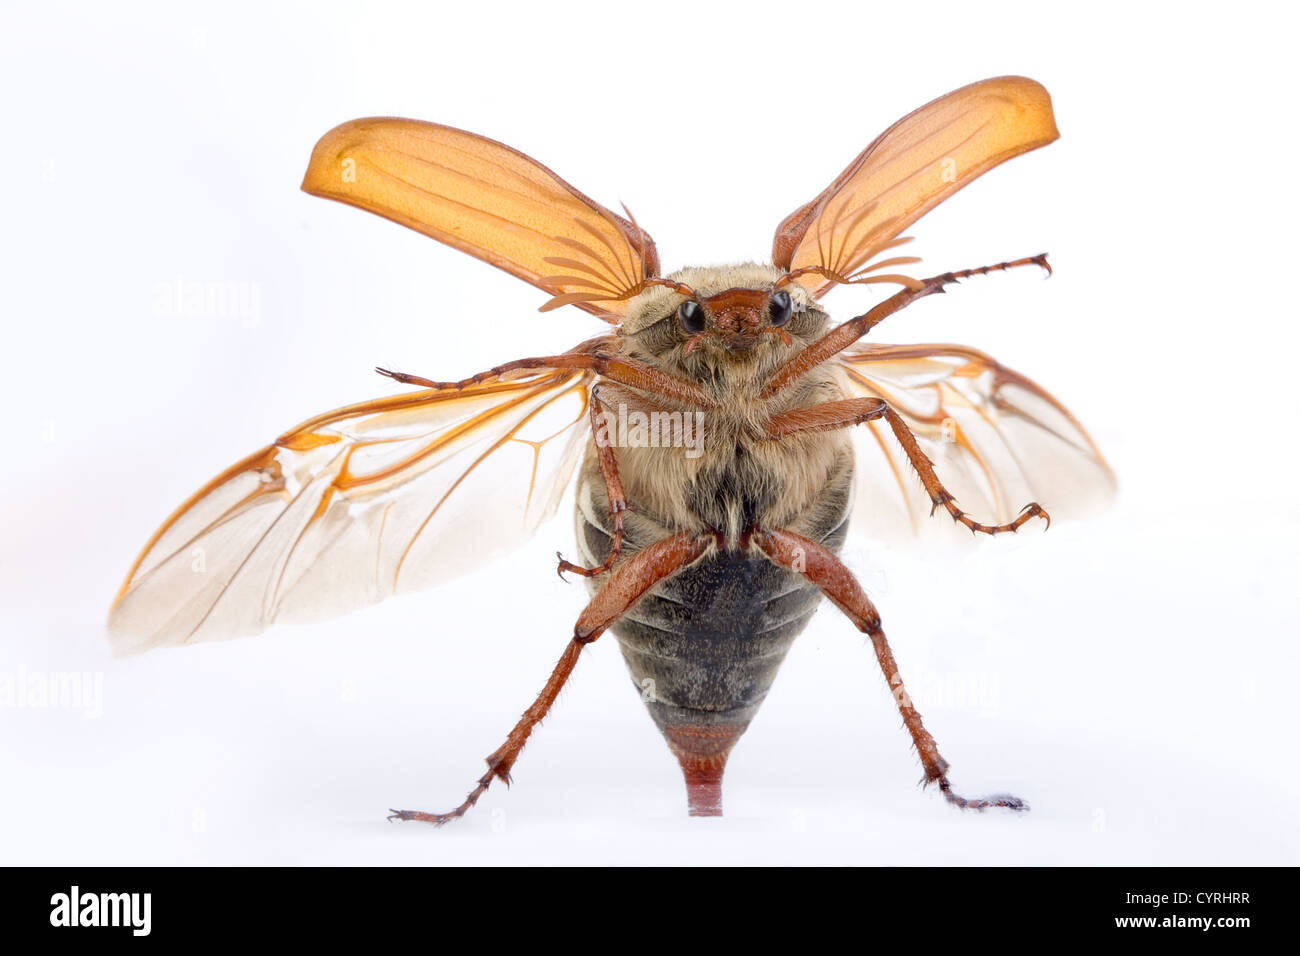 Maybug escarabajo volando contra una ventana de vidrio Foto de stock